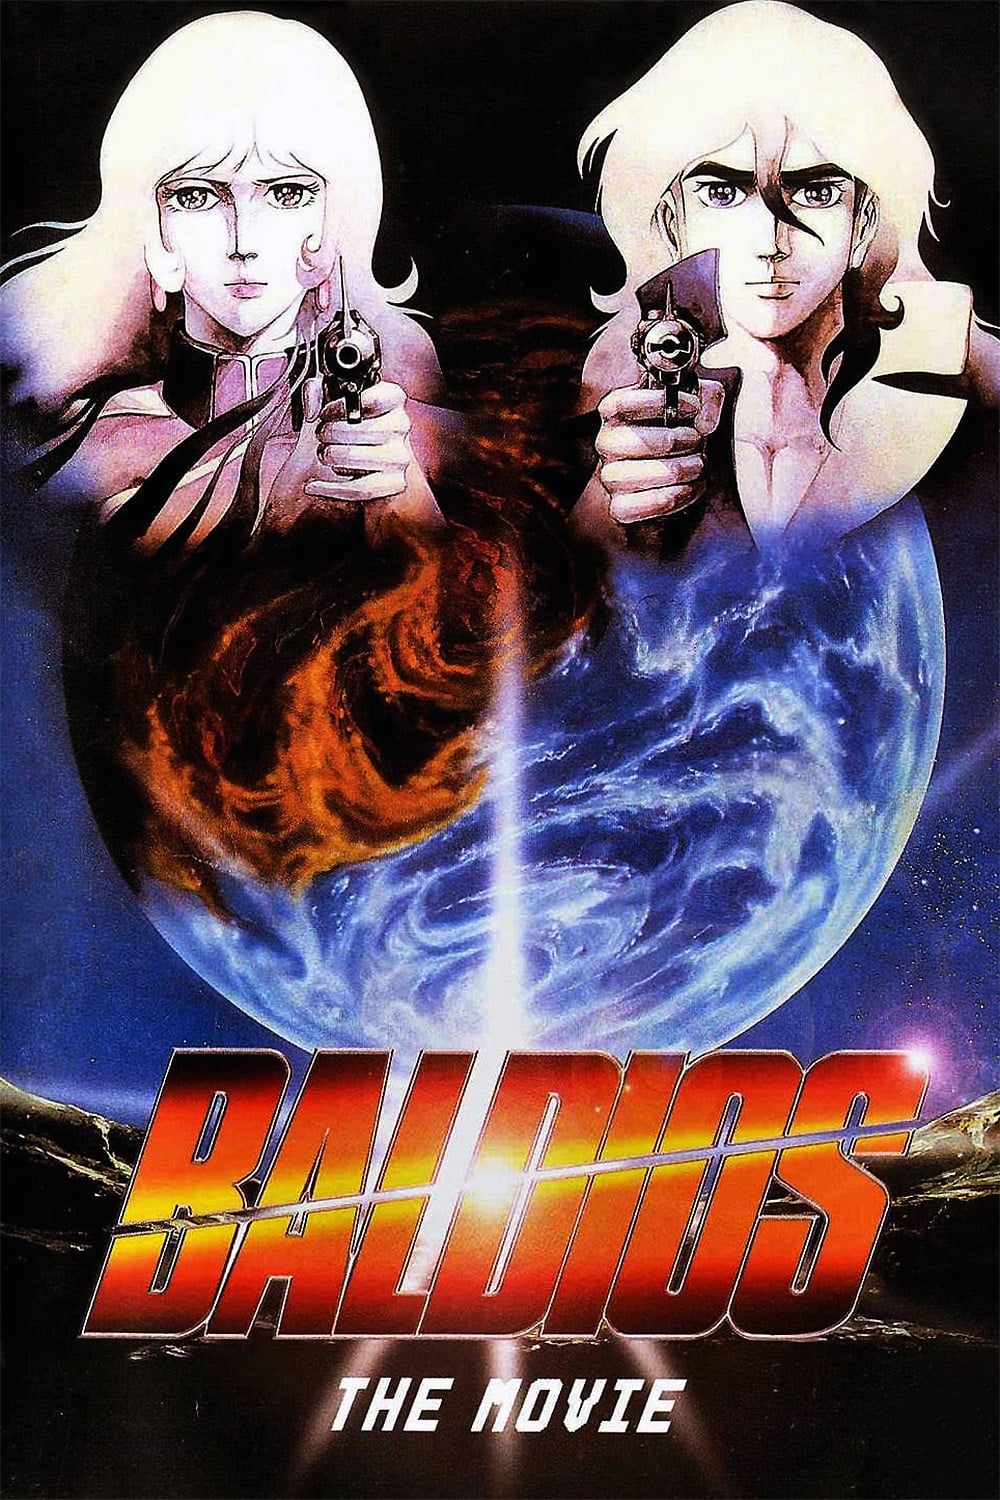 Baldios: Guerreros del espacio (1981)